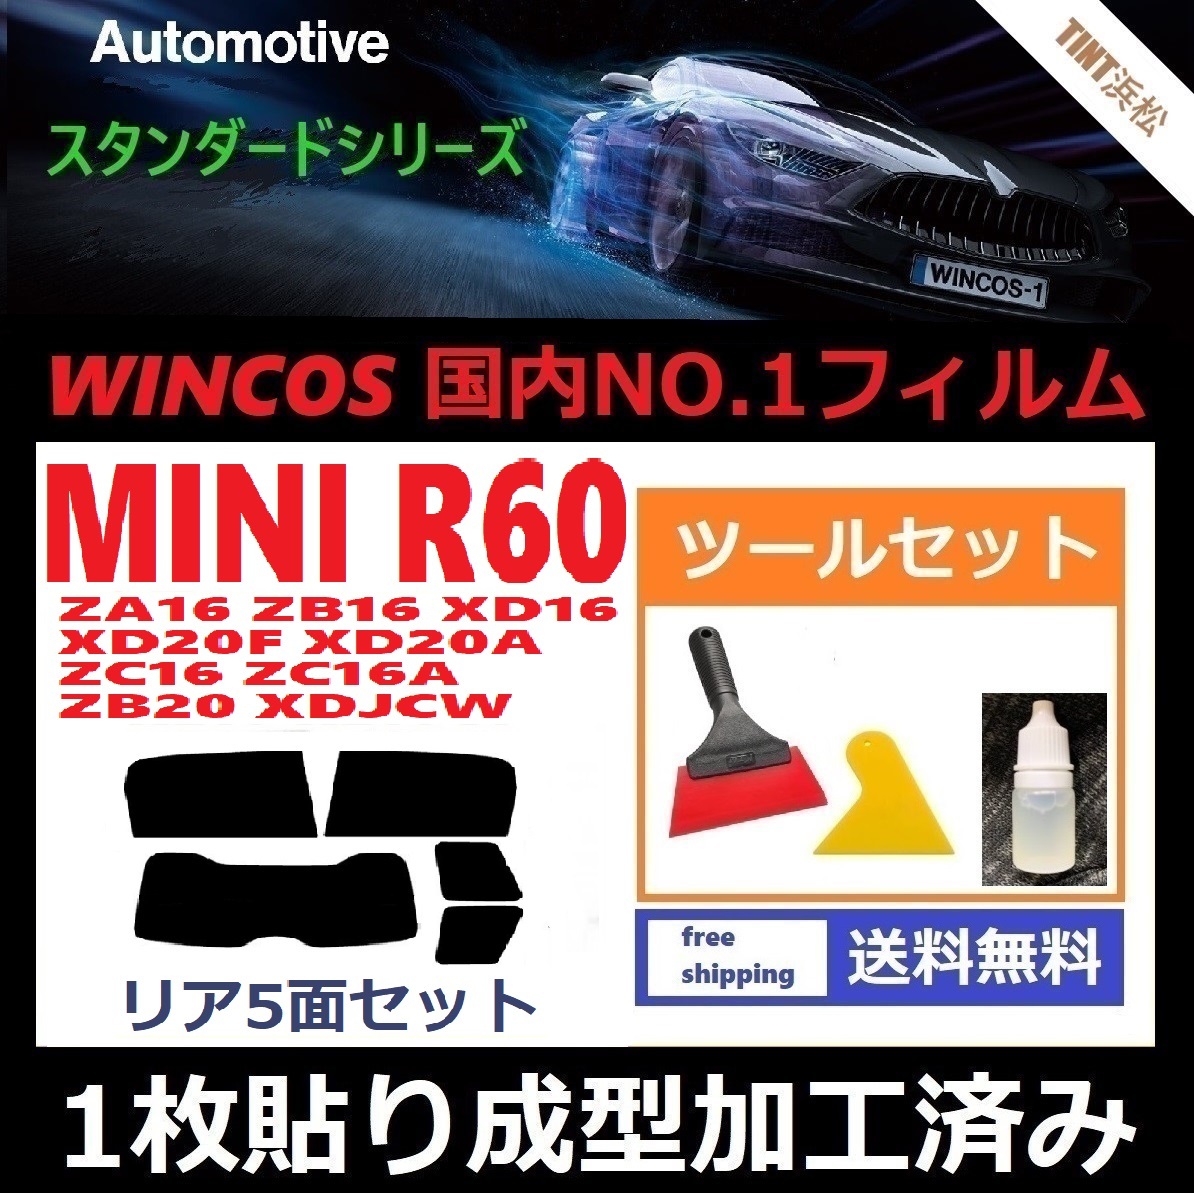 １枚貼り成型加工済みフィルム MINI ミニ (R60系 ZA16 ZB16 XD16 XD20F 他) 【WINCOS】 ツールセット付き ドライ成型